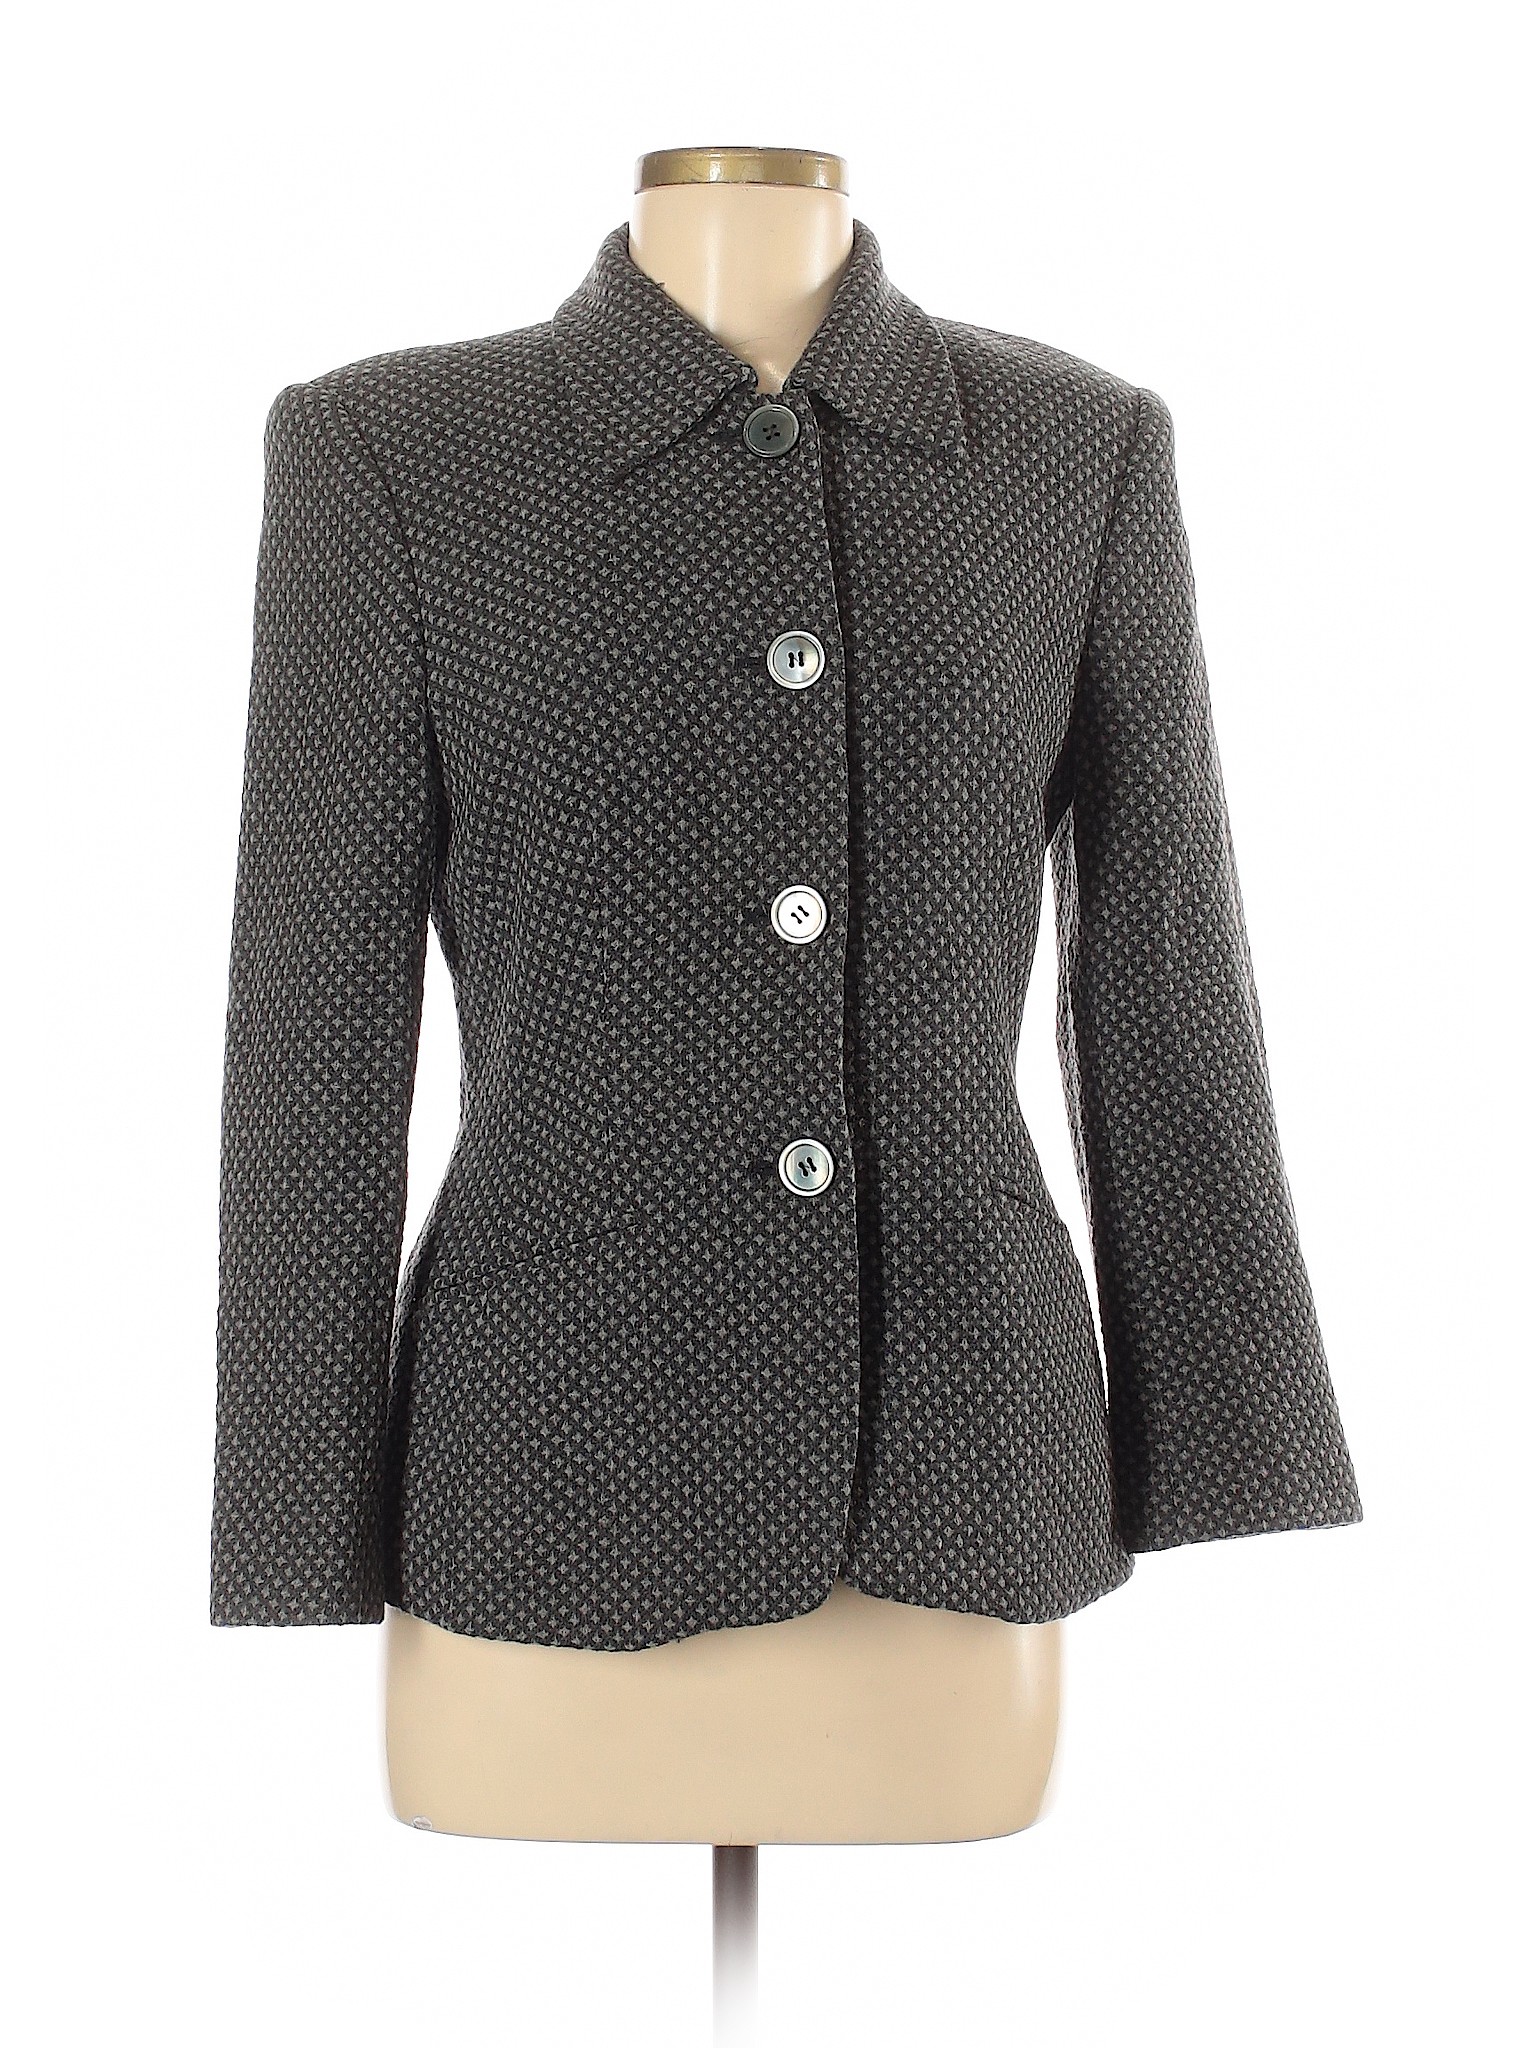 Laurel Women Gray Wool Blazer 38 eur | eBay